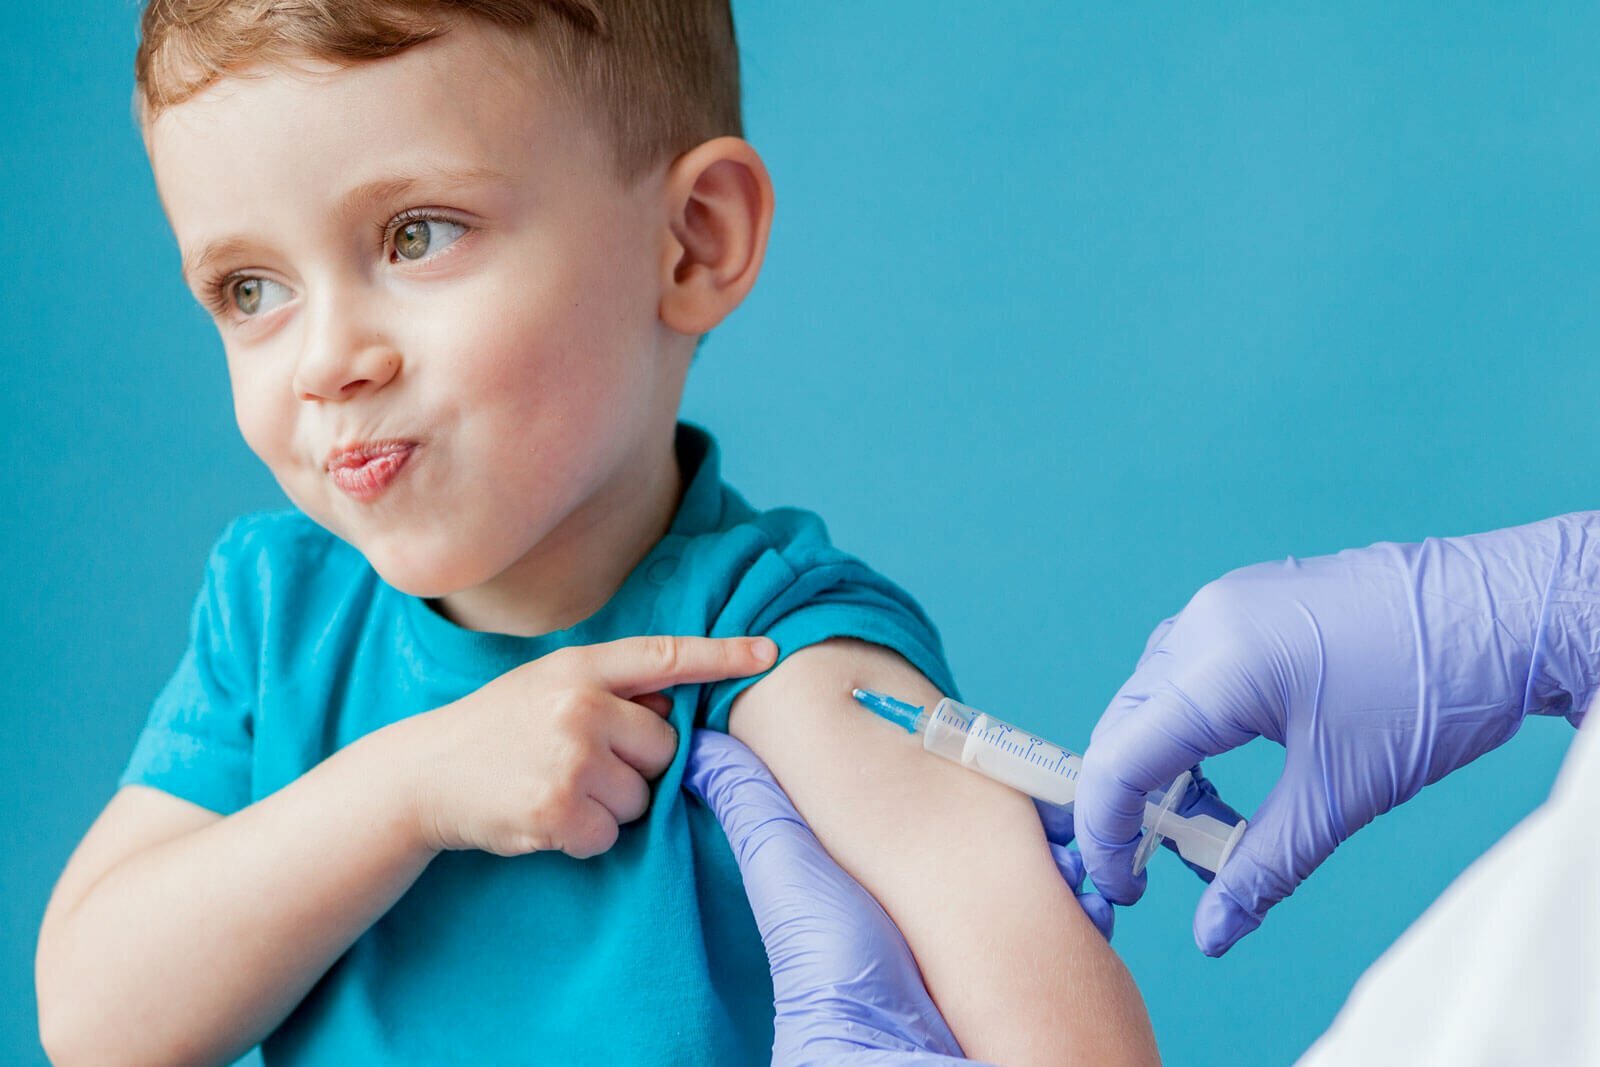 Детская вакцинация. Возьмут ли ребенка в лагерь без прививок в 2021 году